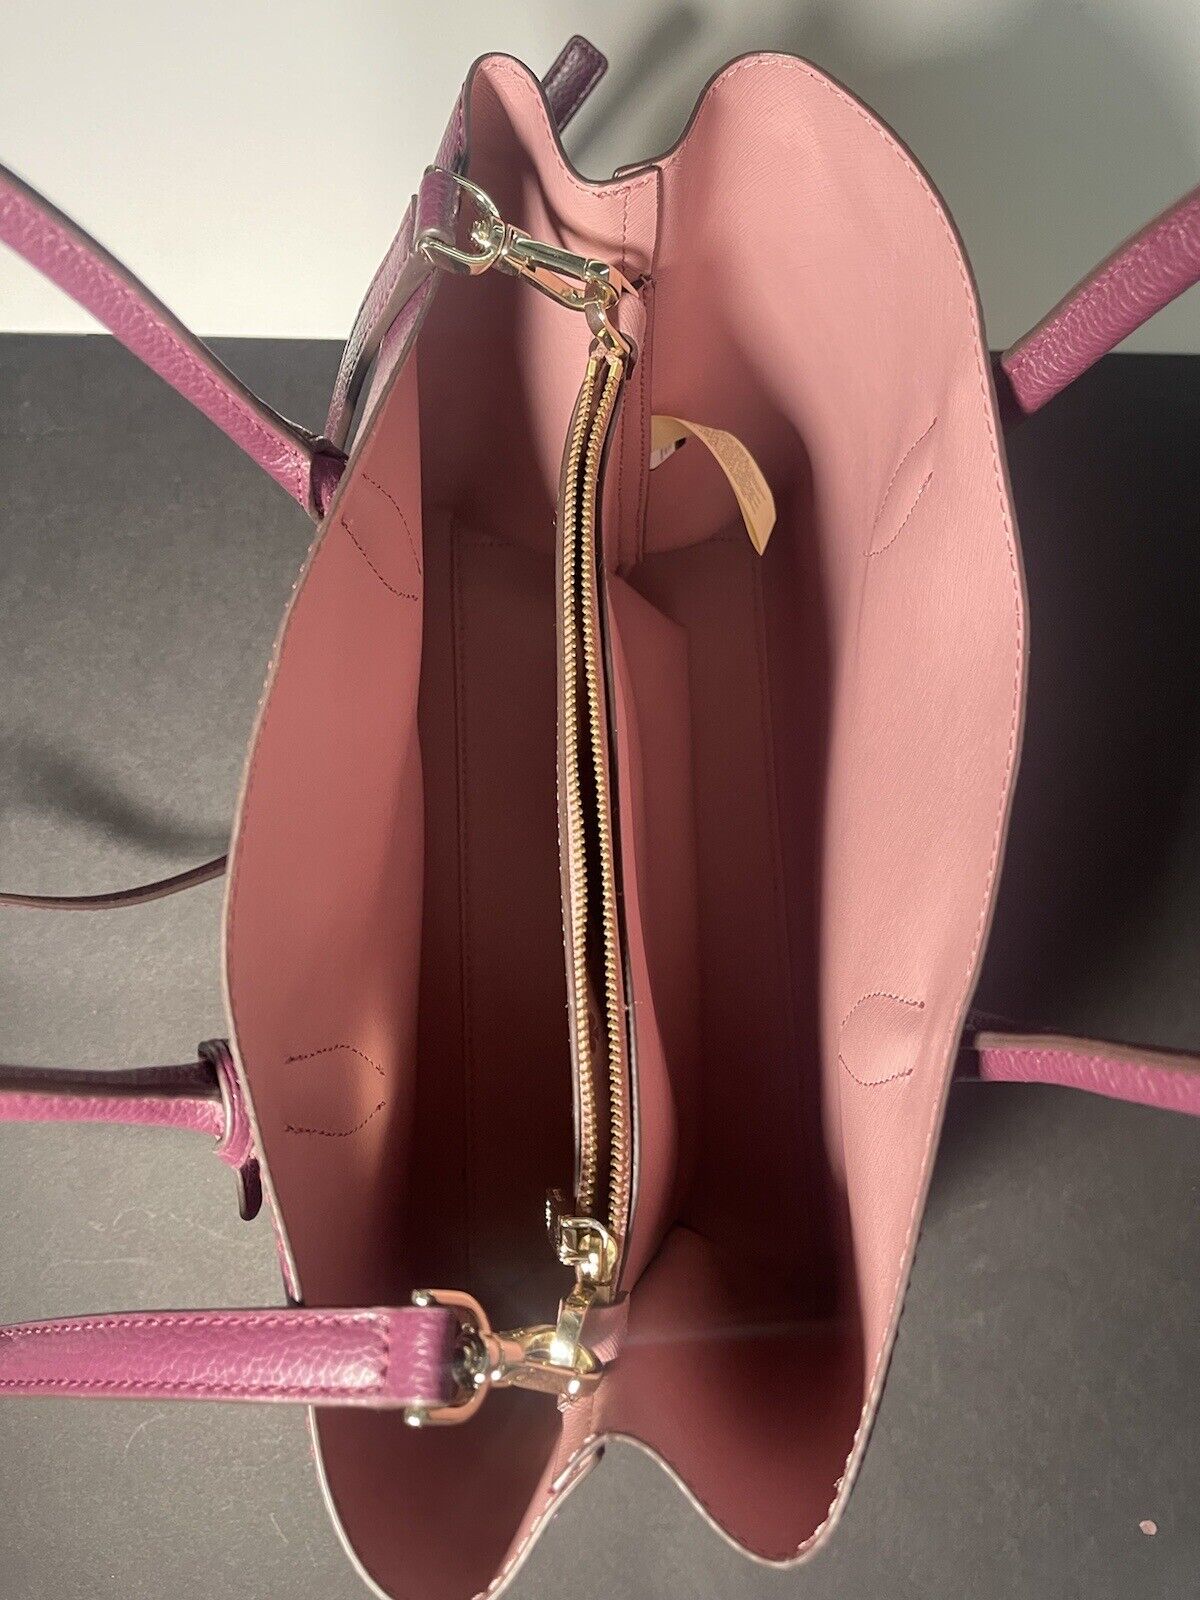 Зрачите елеганцијом са Кејт Спаде Ева средњом торбицом - шљива и розе савршенство!